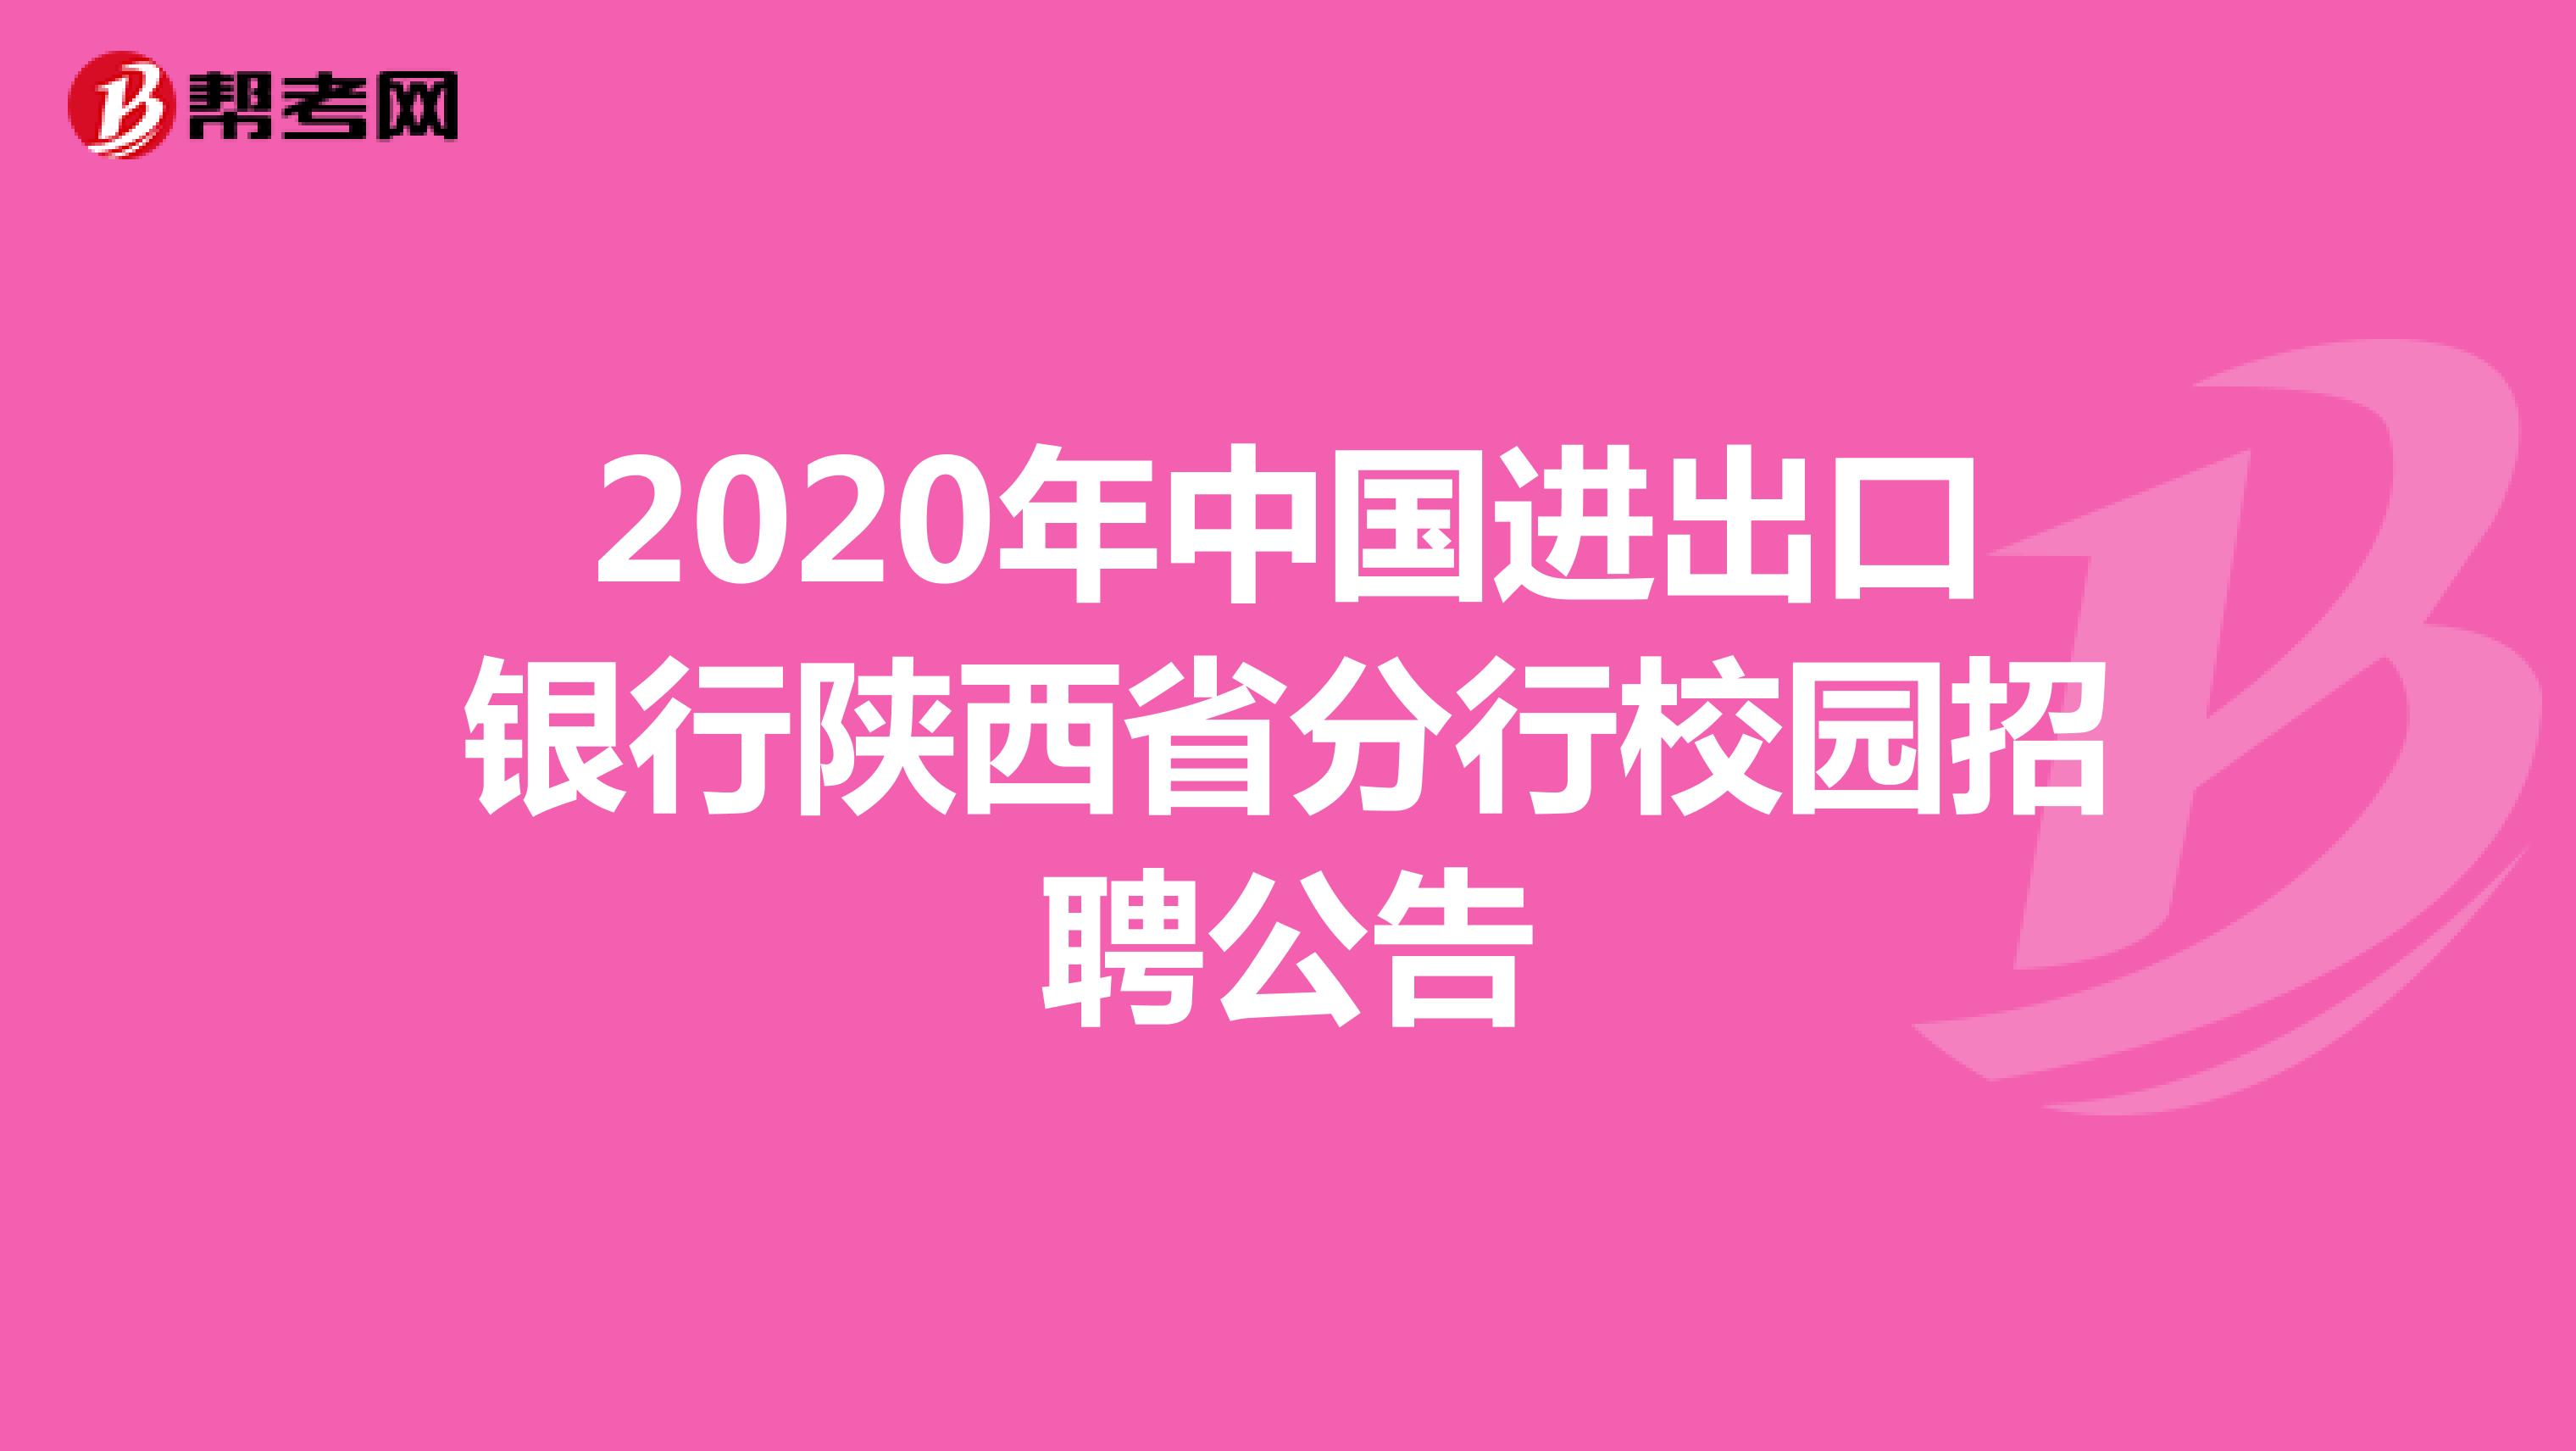 2020年中国进出口银行陕西省分行校园招聘公告